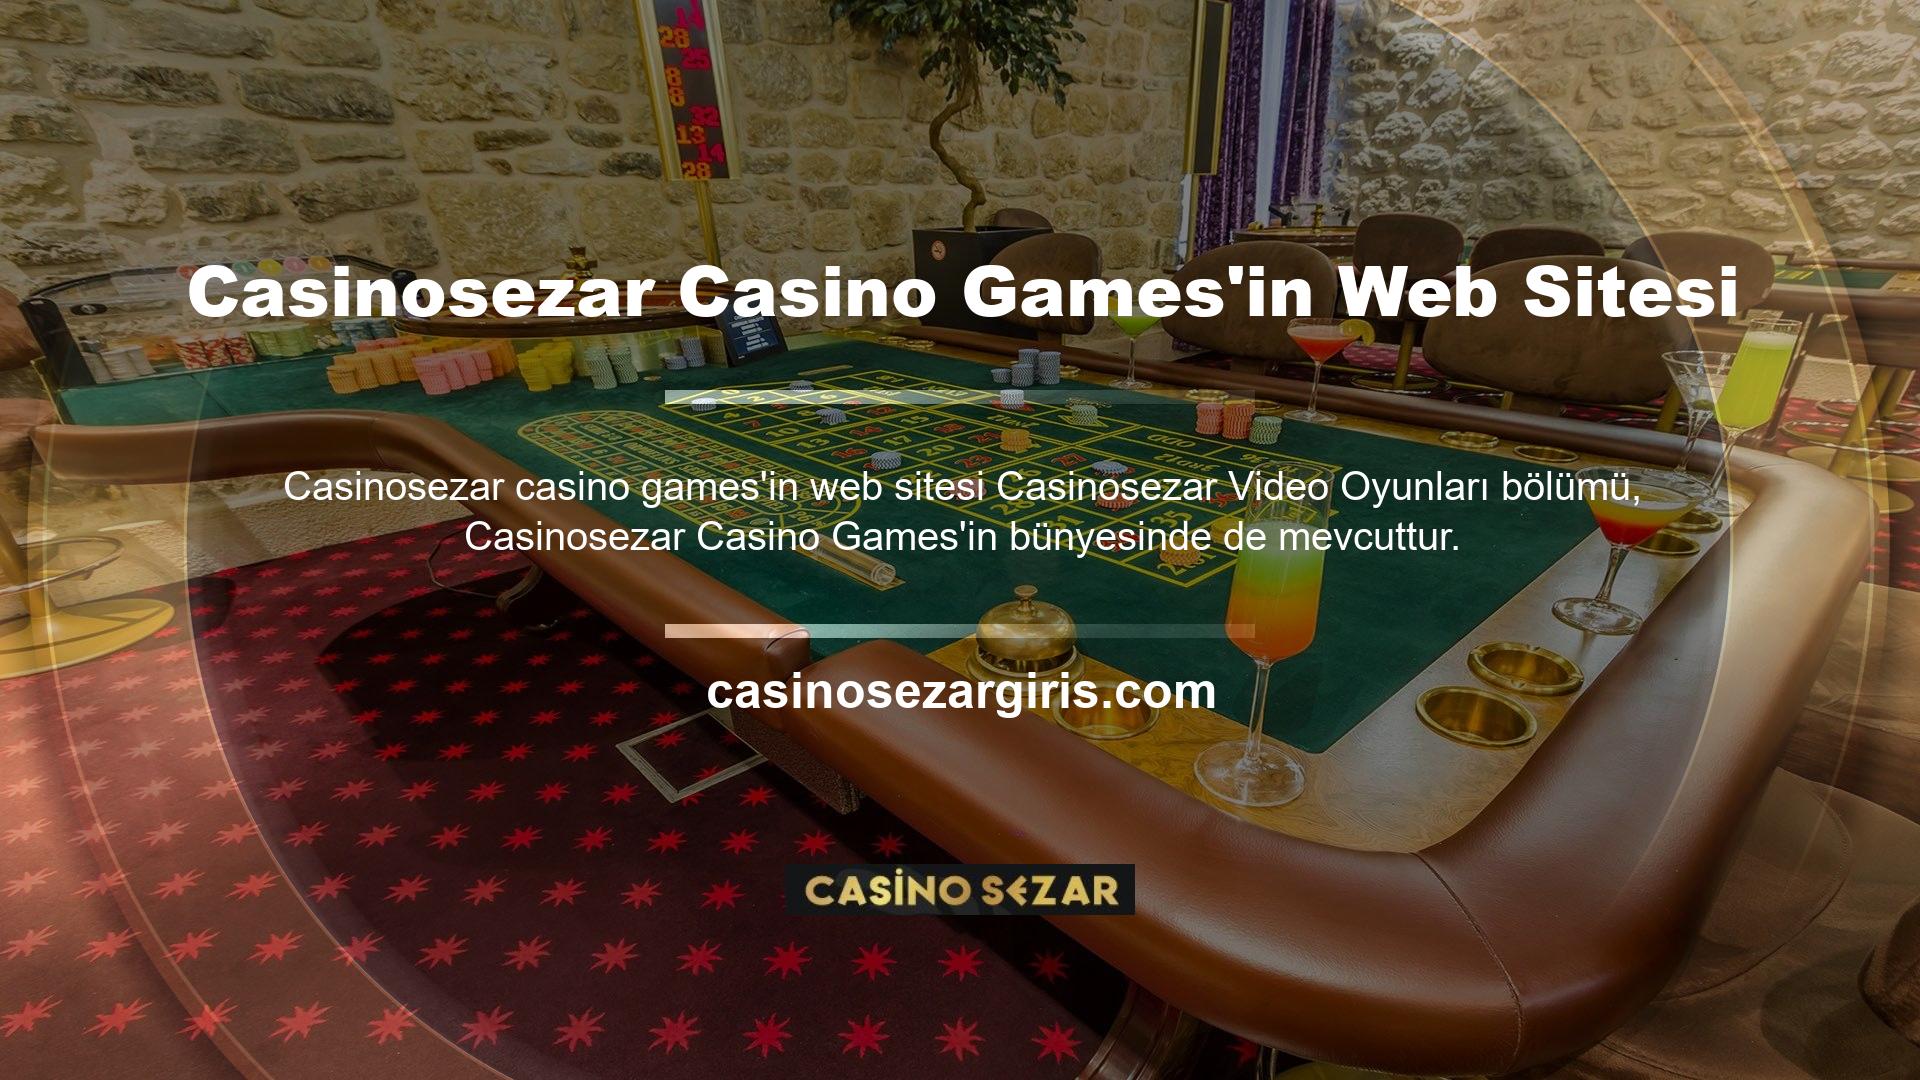 Casinosezar casino oyun web sitesinde sunulan oyunlar arasında Spring, War 6+ Poker, Poker ve Baccarat, Wheel of Fortune, Lucky 7, Lucky 6, Dice Duel, Craps ve diğerleri yer almaktadır